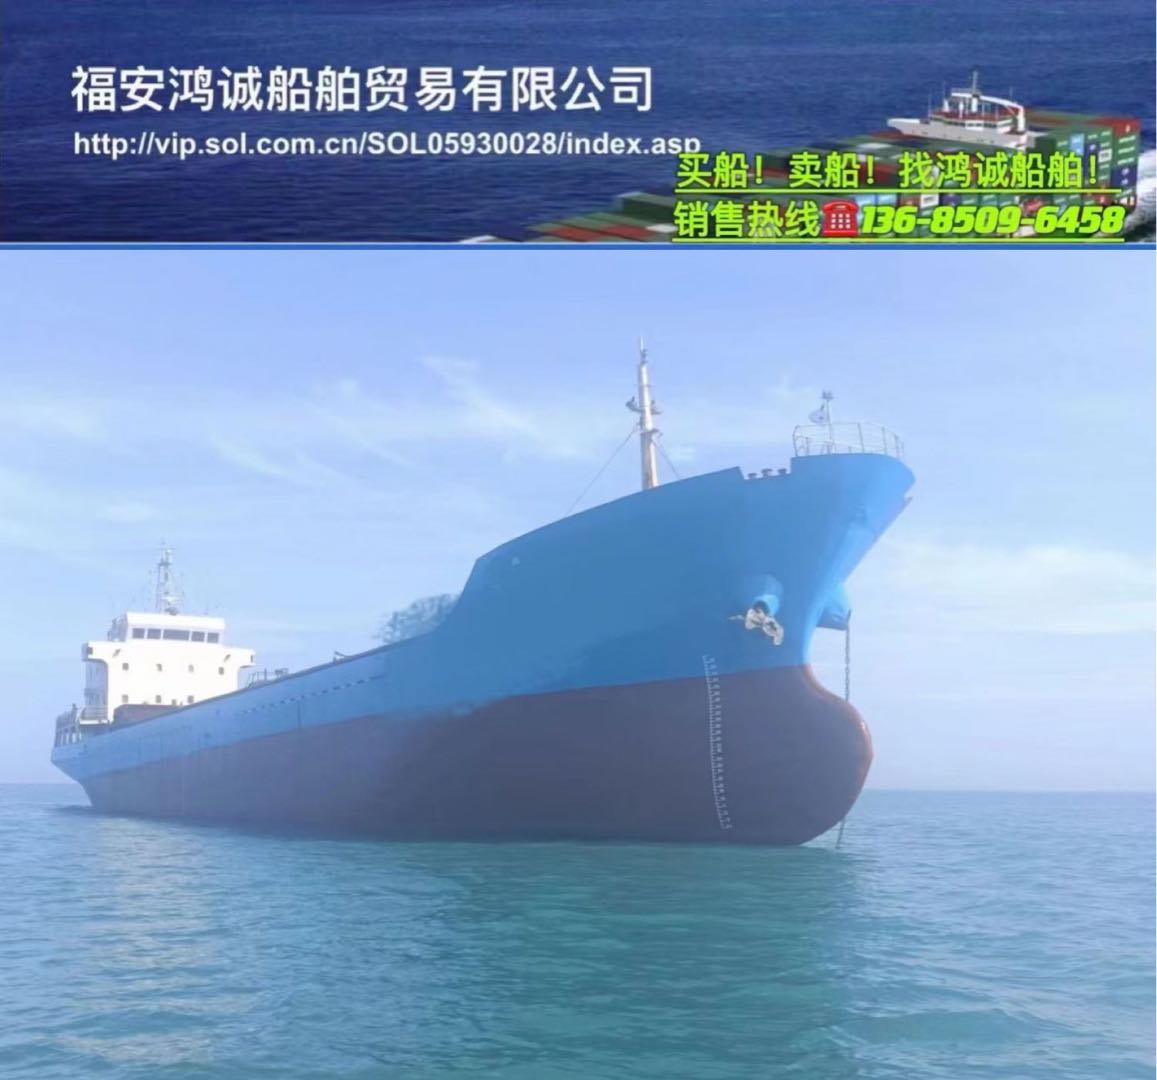 低价出卖3315吨正在航干集货船 祸建 宁德市-2.jpg